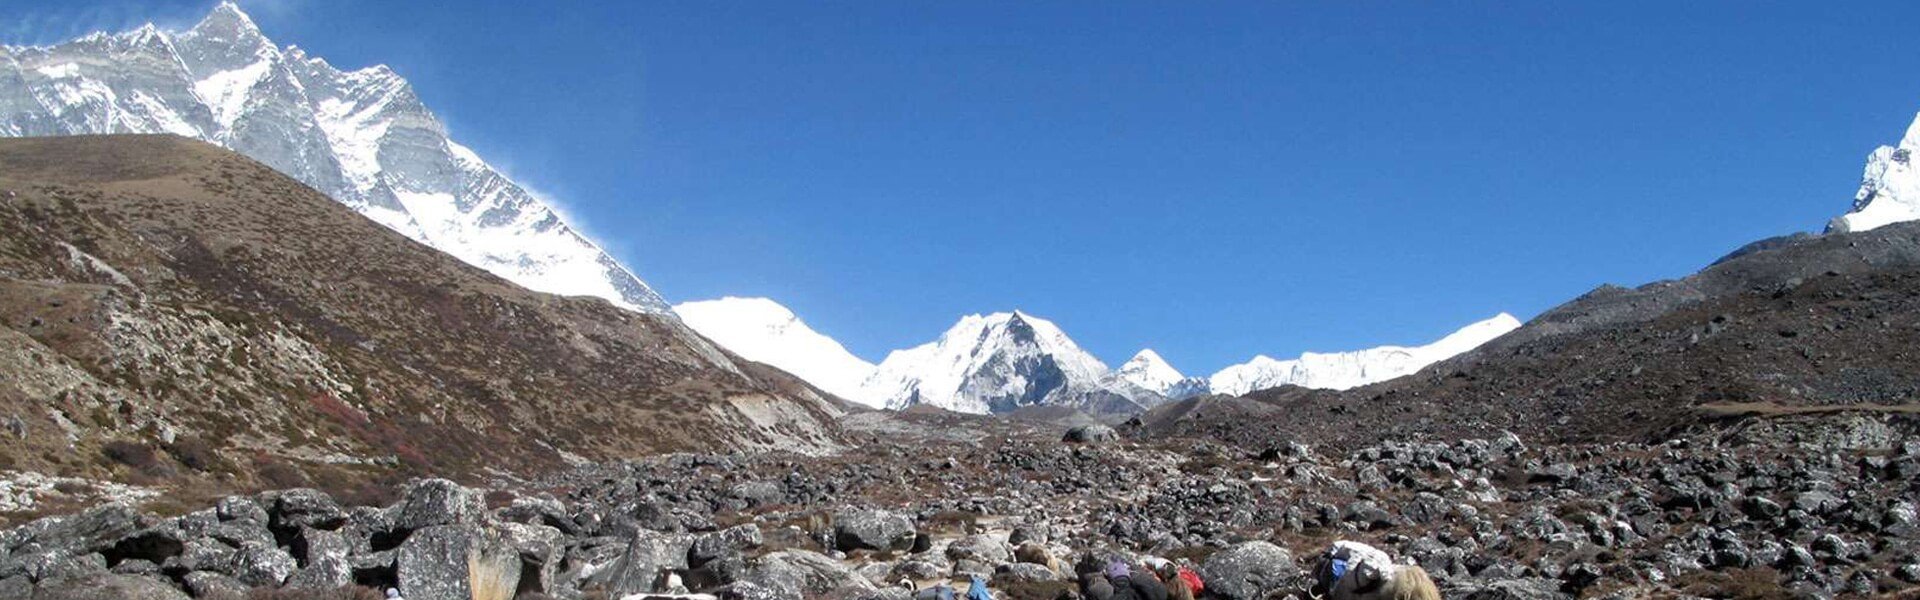 Everest Base Camp Trek in September and October